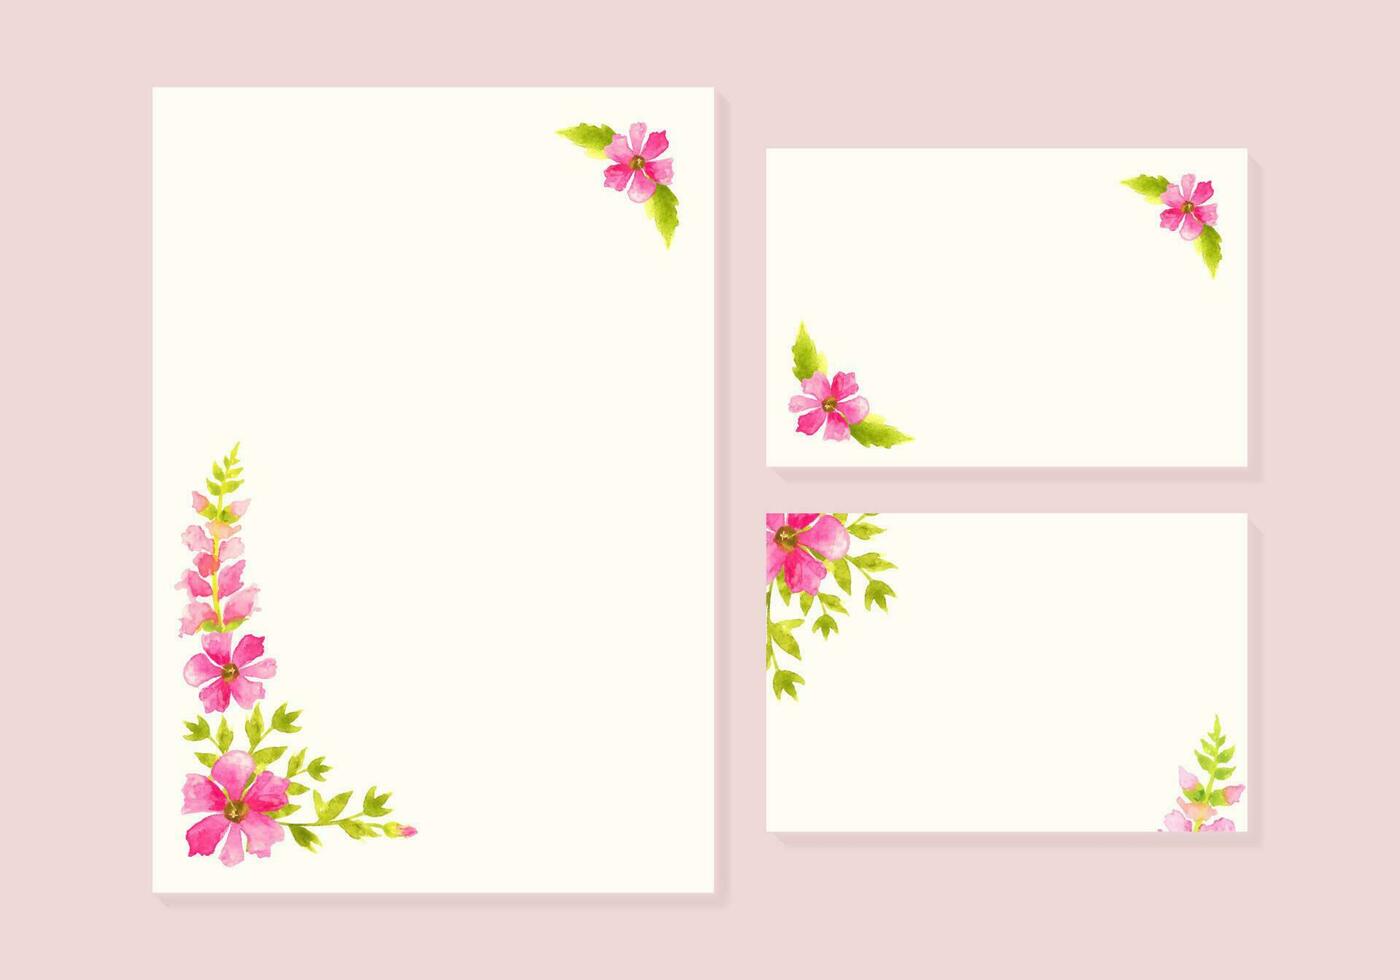 tarjeta o invitación modelo con rincones frontera marcos con mano dibujado acuarela flores y hojas vector